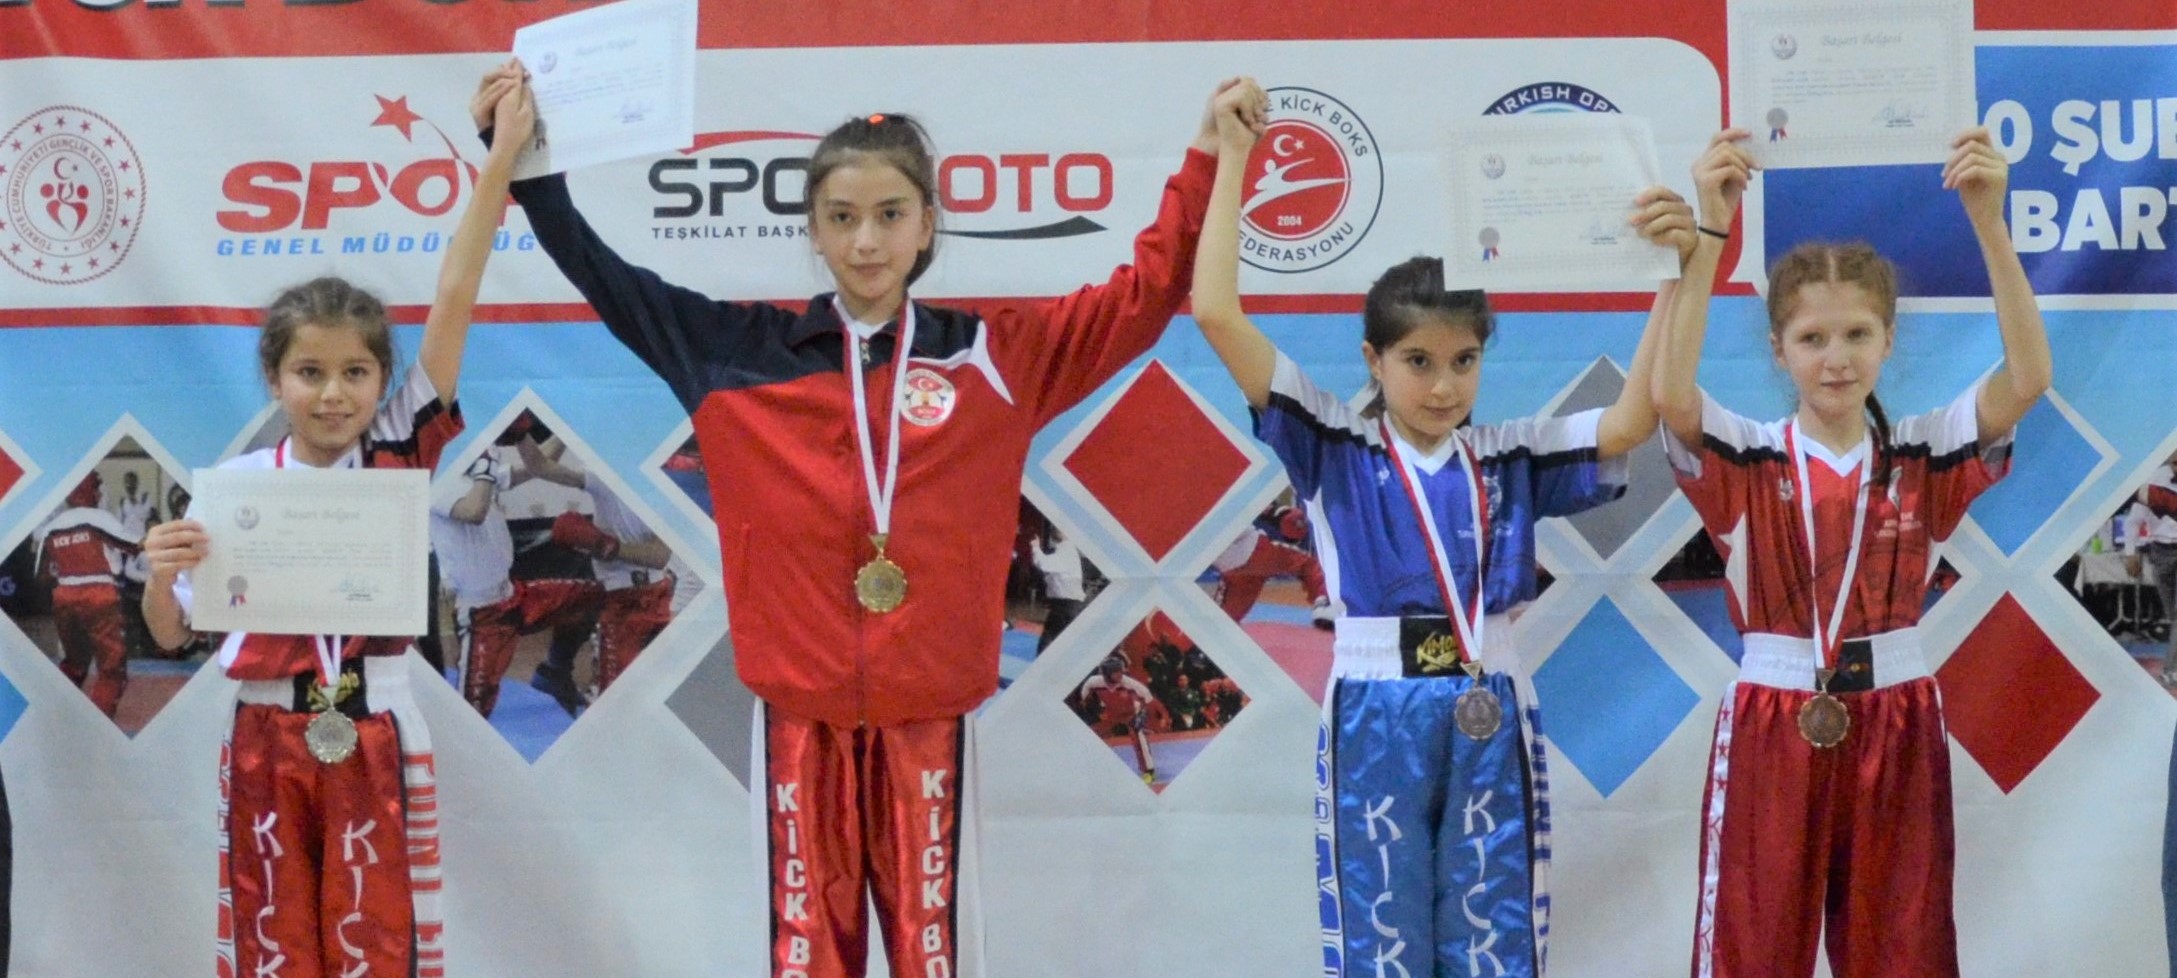 Türkiye Küçükler Okul Sporları
Kick Boks Şampiyonası
08-11 Haziran 2023
Kayseri